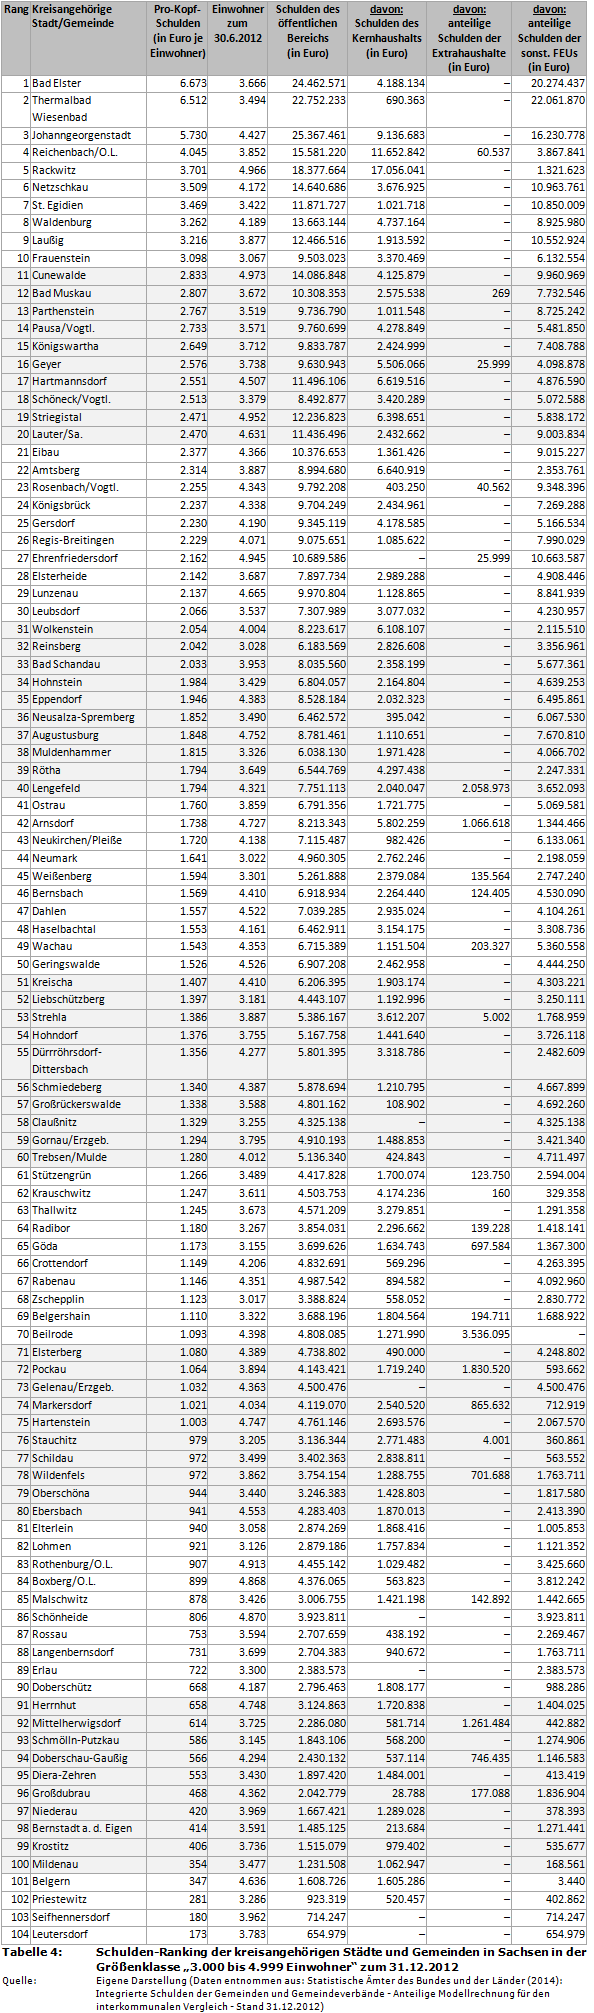 Schulden-Ranking der kreisangehörigen Städte und Gemeinden in Sachsen in der Größenklasse '3.000 bis 4.999 Einwohner' zum 31.12.2012